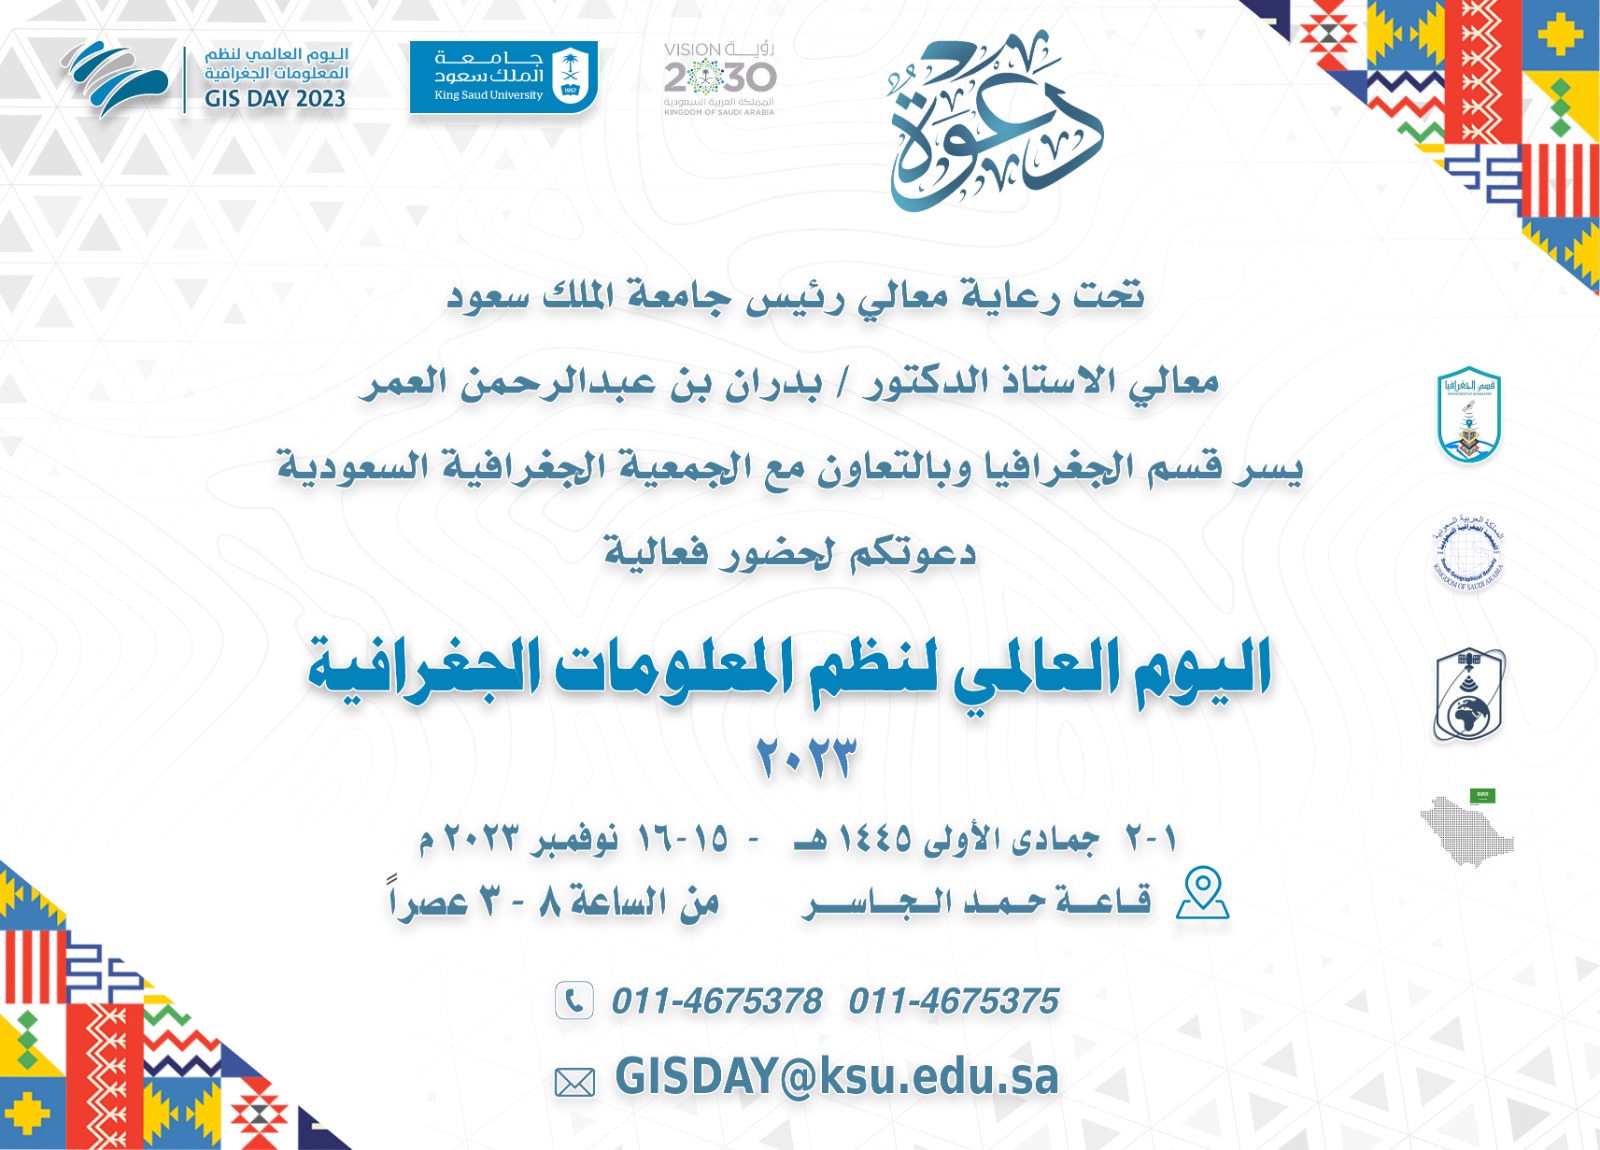 اليوم العالمي لنظم المعلومات الجغرافية GISDAY2023